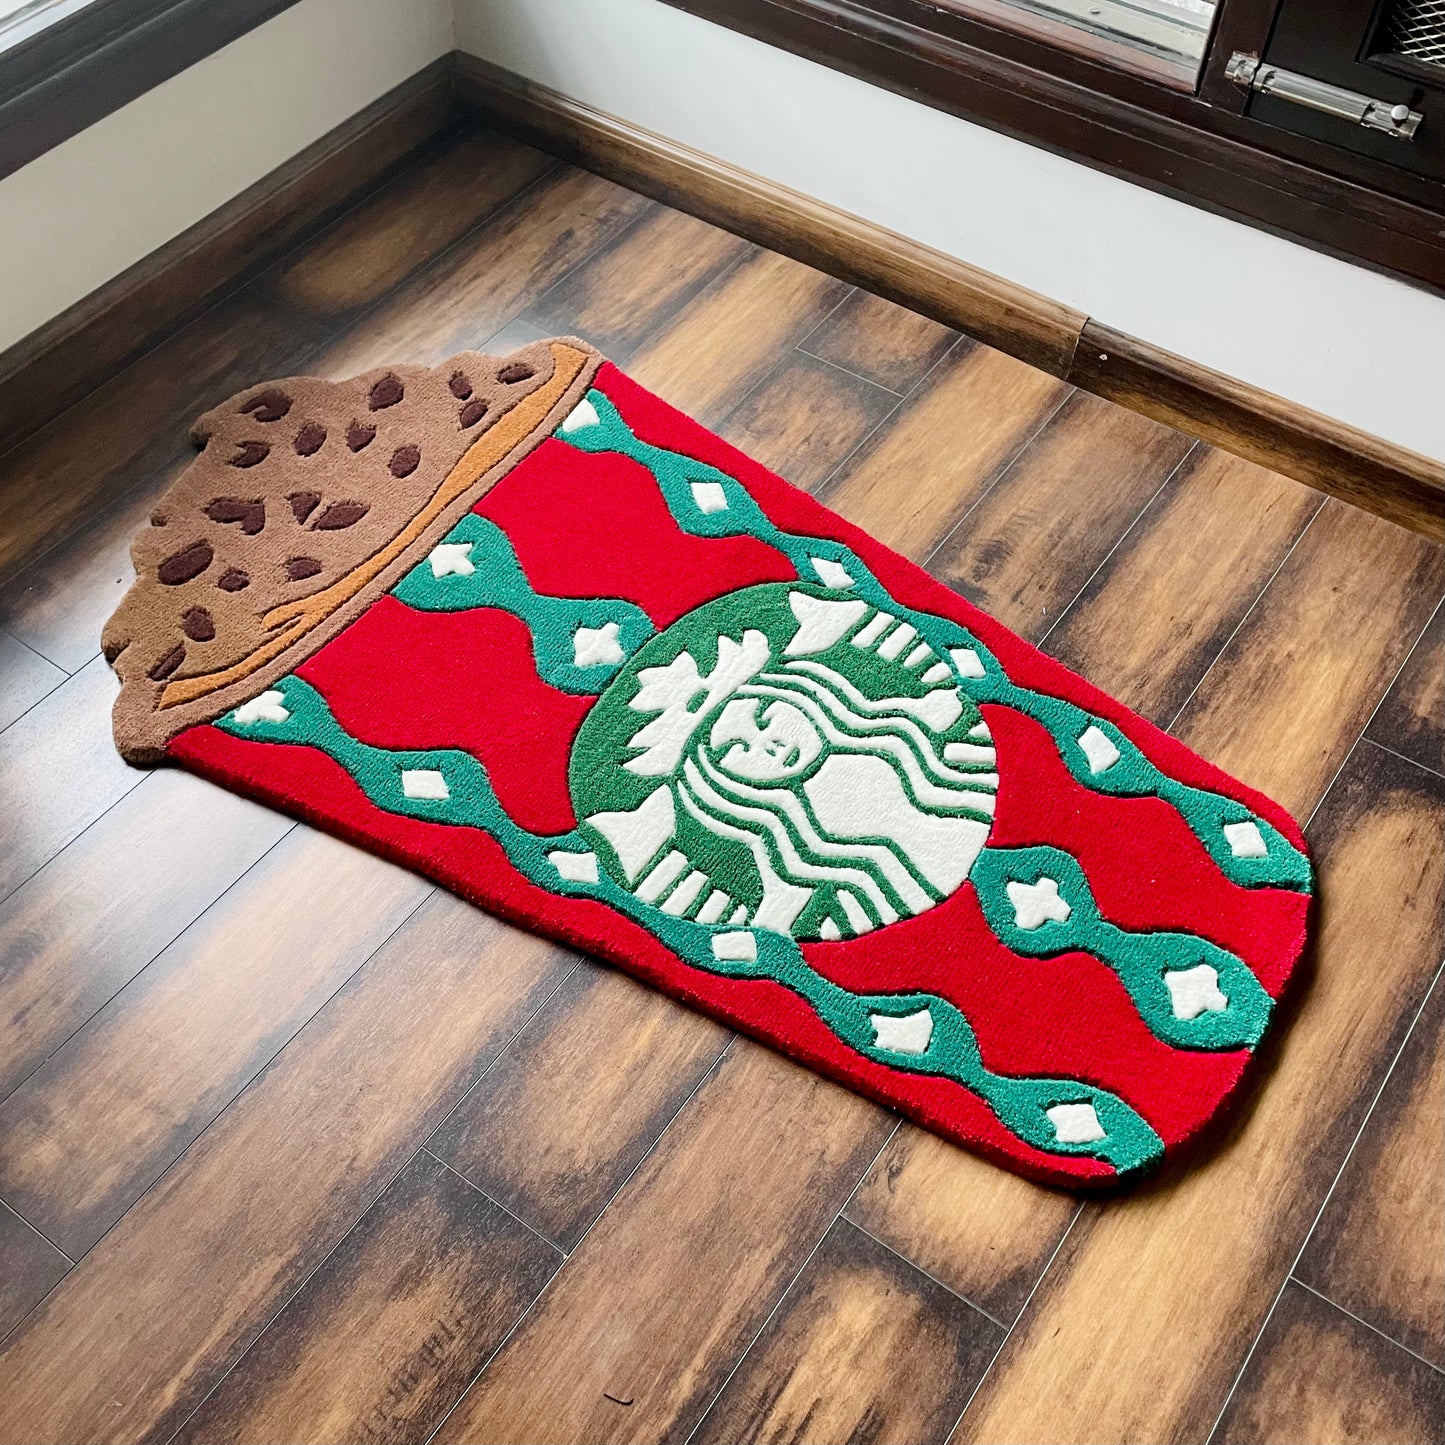 Christmas Theme Starbucks Hand-Tufted Rug